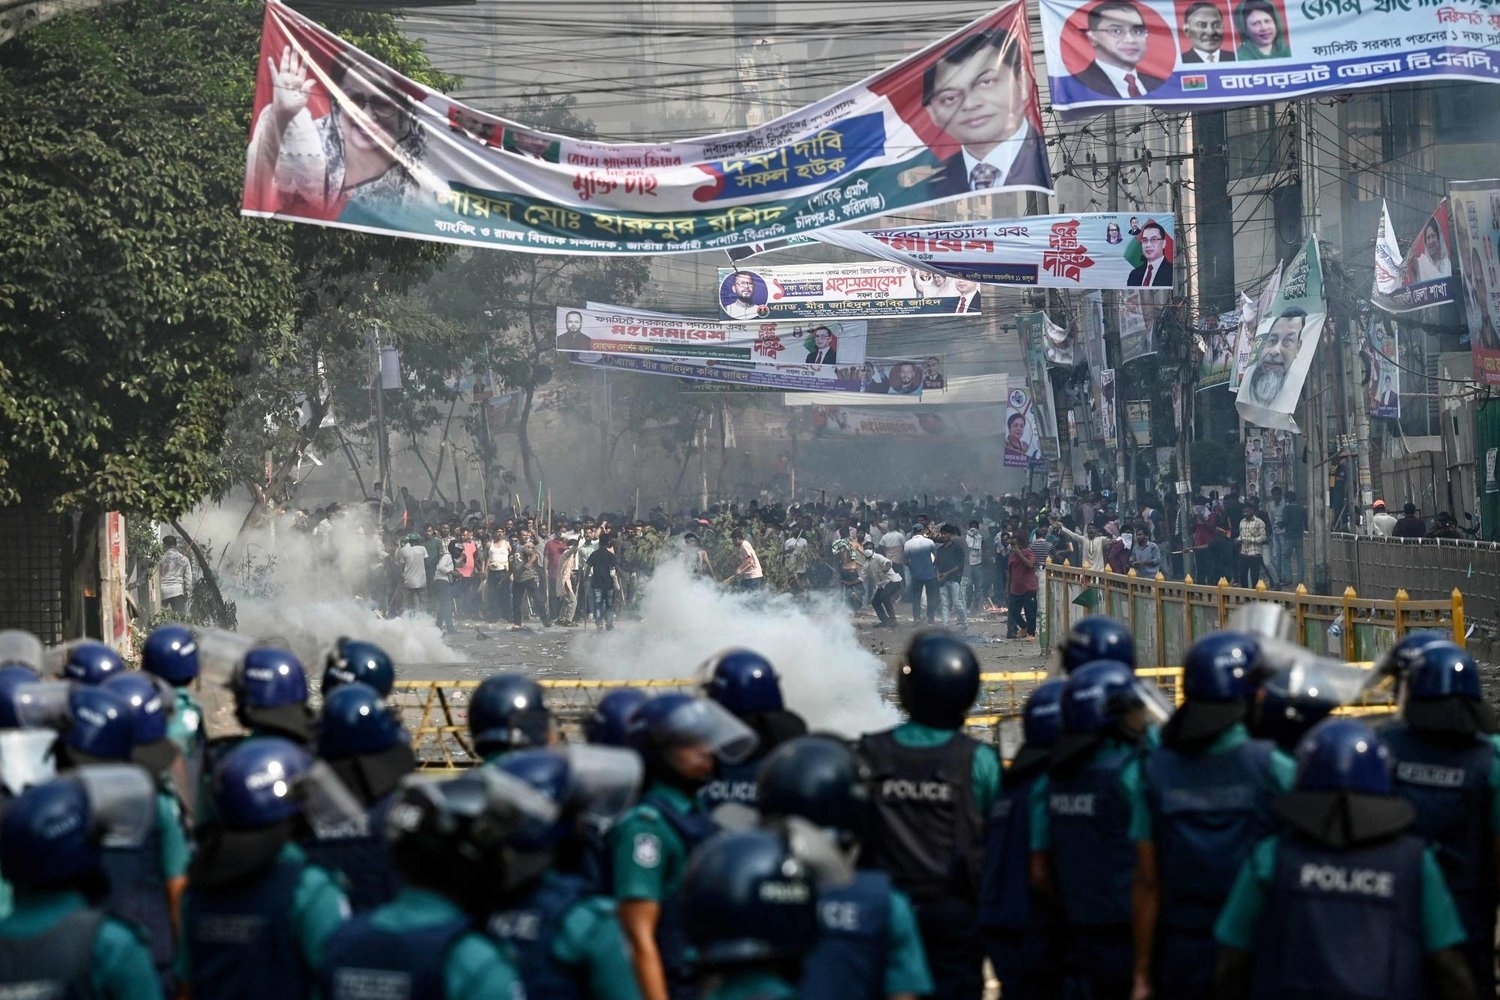 بنغلاديش: اشتباكات عنيفة في مظاهرات مناهضة للحكومة